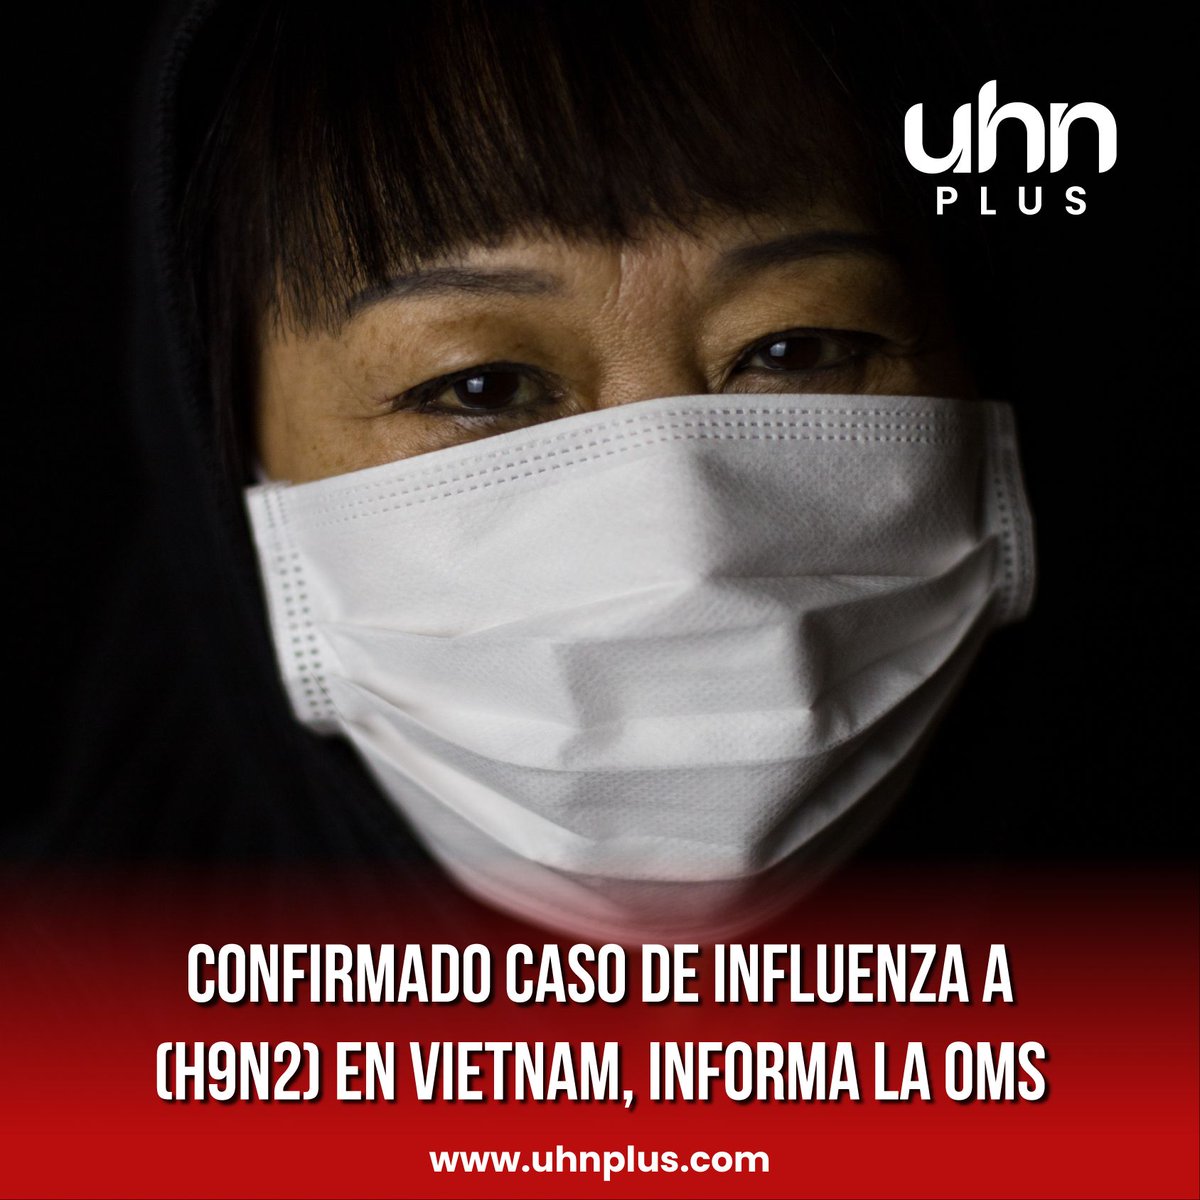 🇻🇳 | ALERTA SANITARIA: La Organización Mundial de la Salud ha confirmado que fue notificada sobre un caso de infección humana por el virus de la influenza A (H9N2) en Vietnam, registrado el 9 de abril.